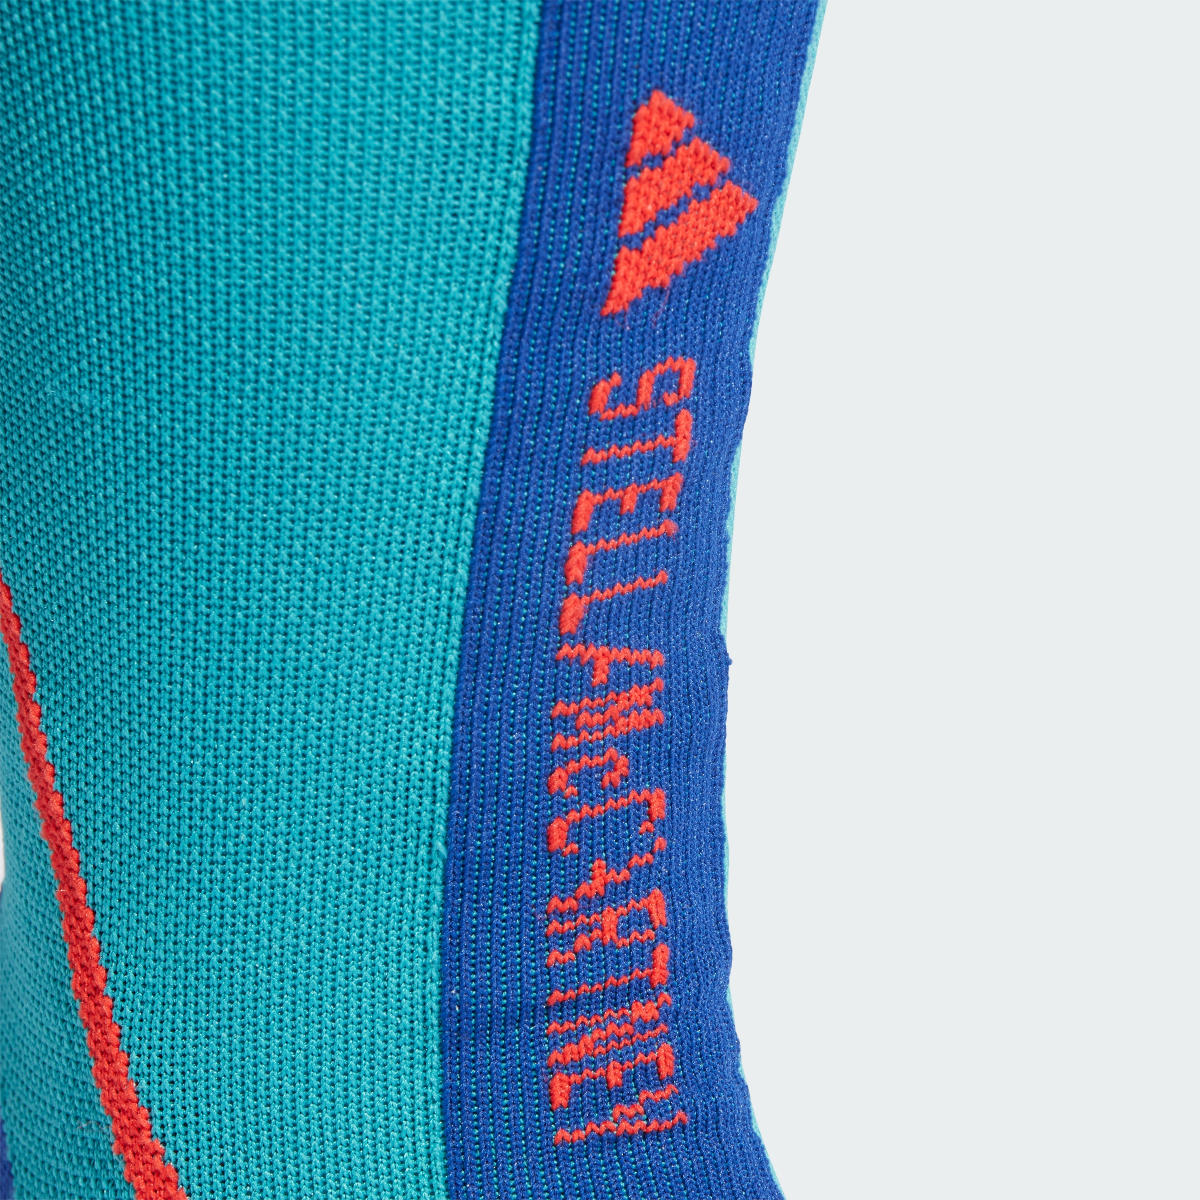 Adidas by Stella McCartney Crew Socks. 4